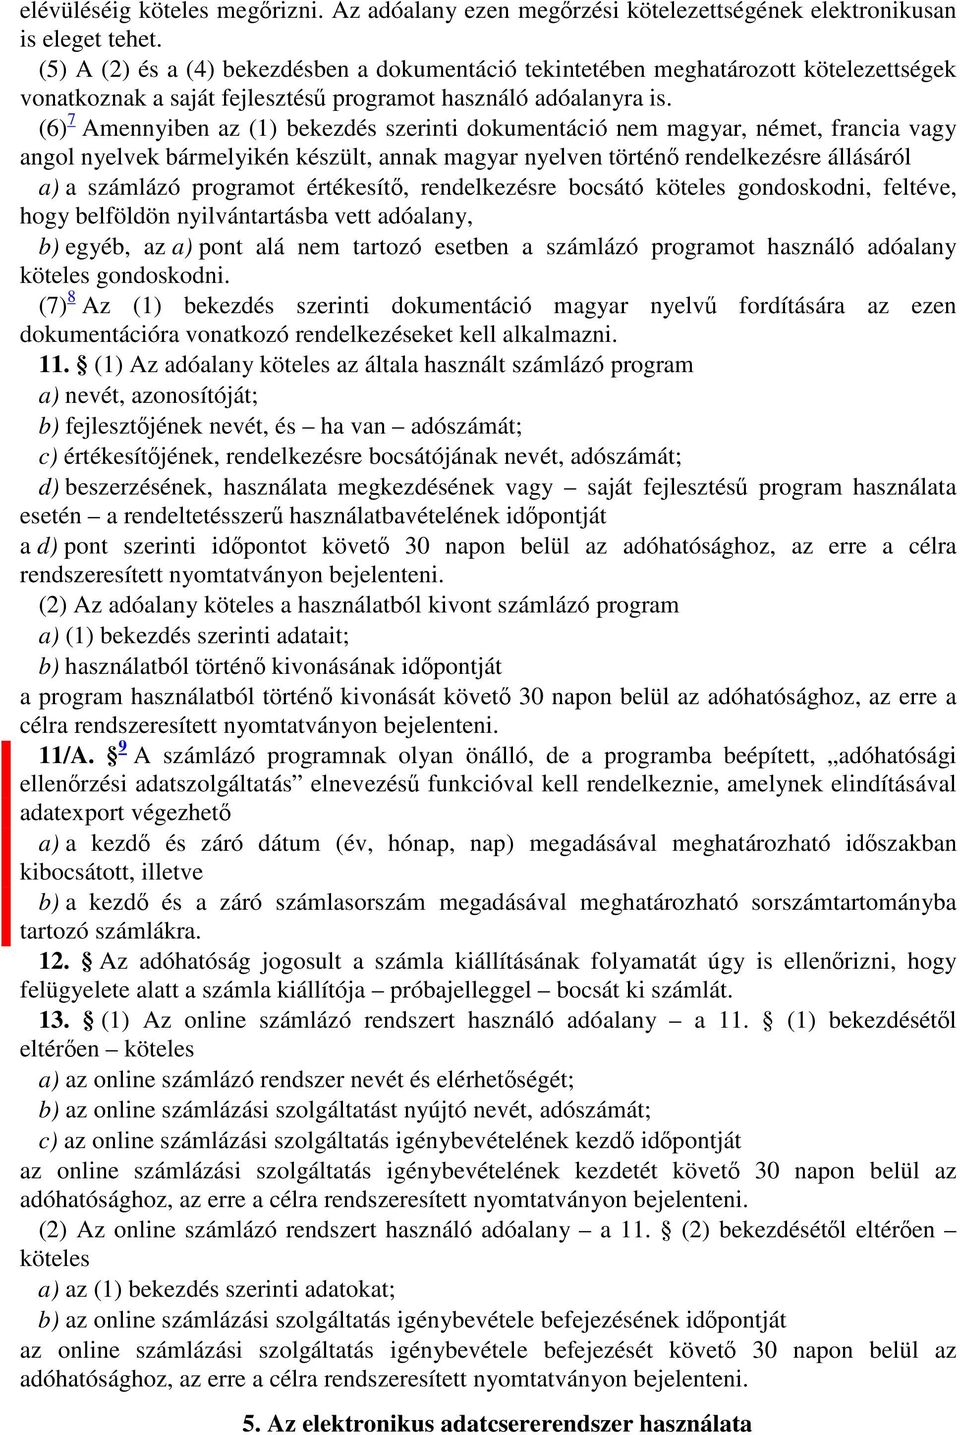 (6) 7 Amennyiben az (1) bekezdés szerinti dokumentáció nem magyar, német, francia vagy angol nyelvek bármelyikén készült, annak magyar nyelven történő rendelkezésre állásáról a) a számlázó programot